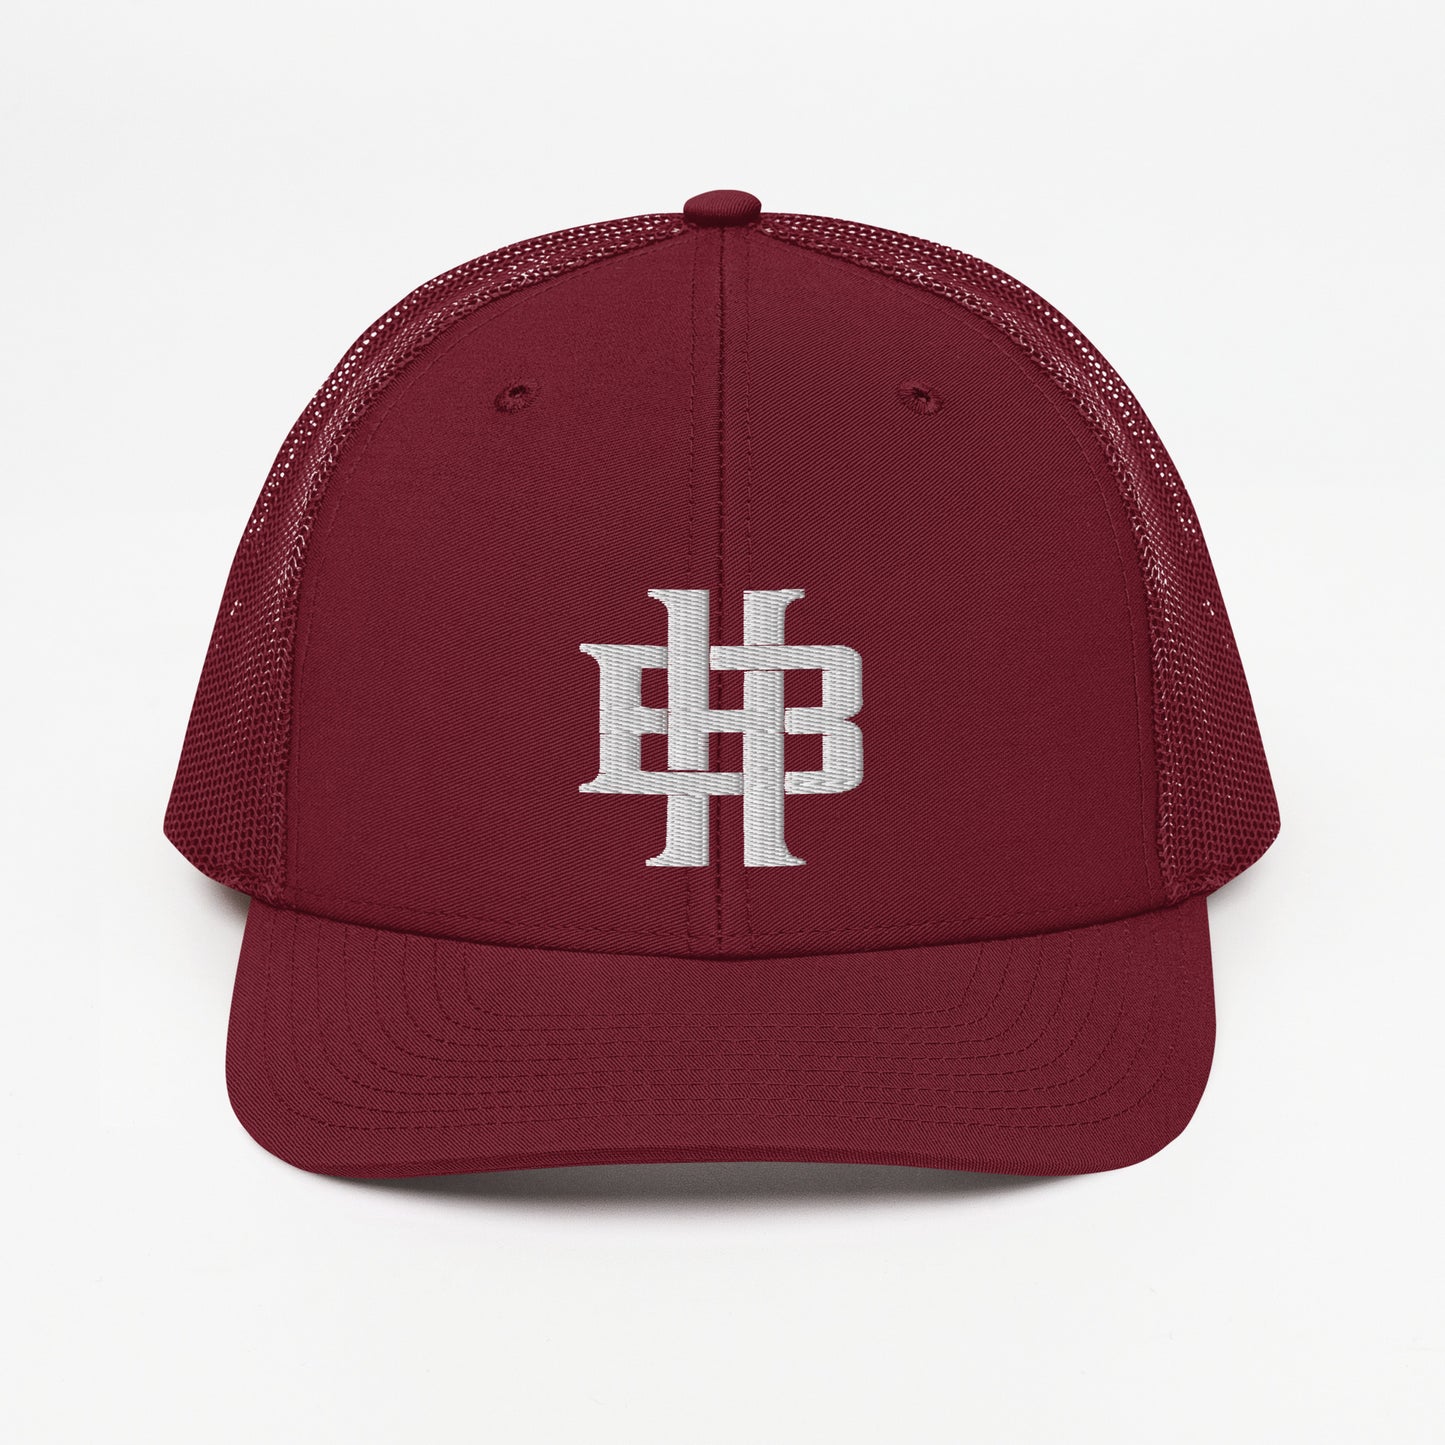 BH Trucker Hat